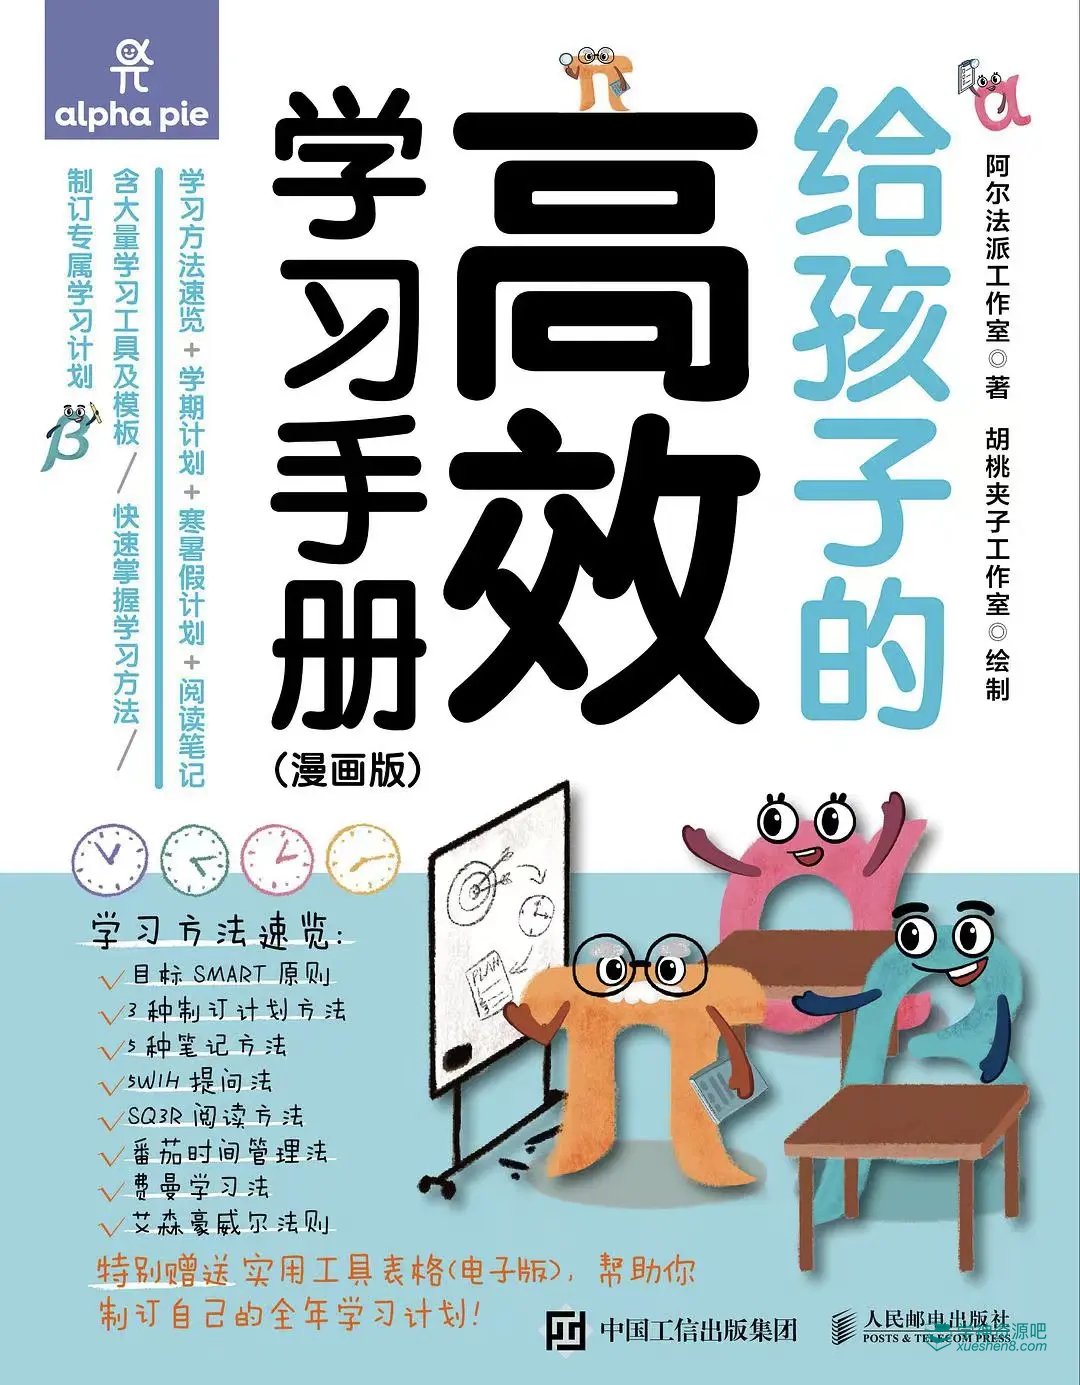 《给孩子的高效学习手册》[漫画版] PDF/azw3/mobi/epub